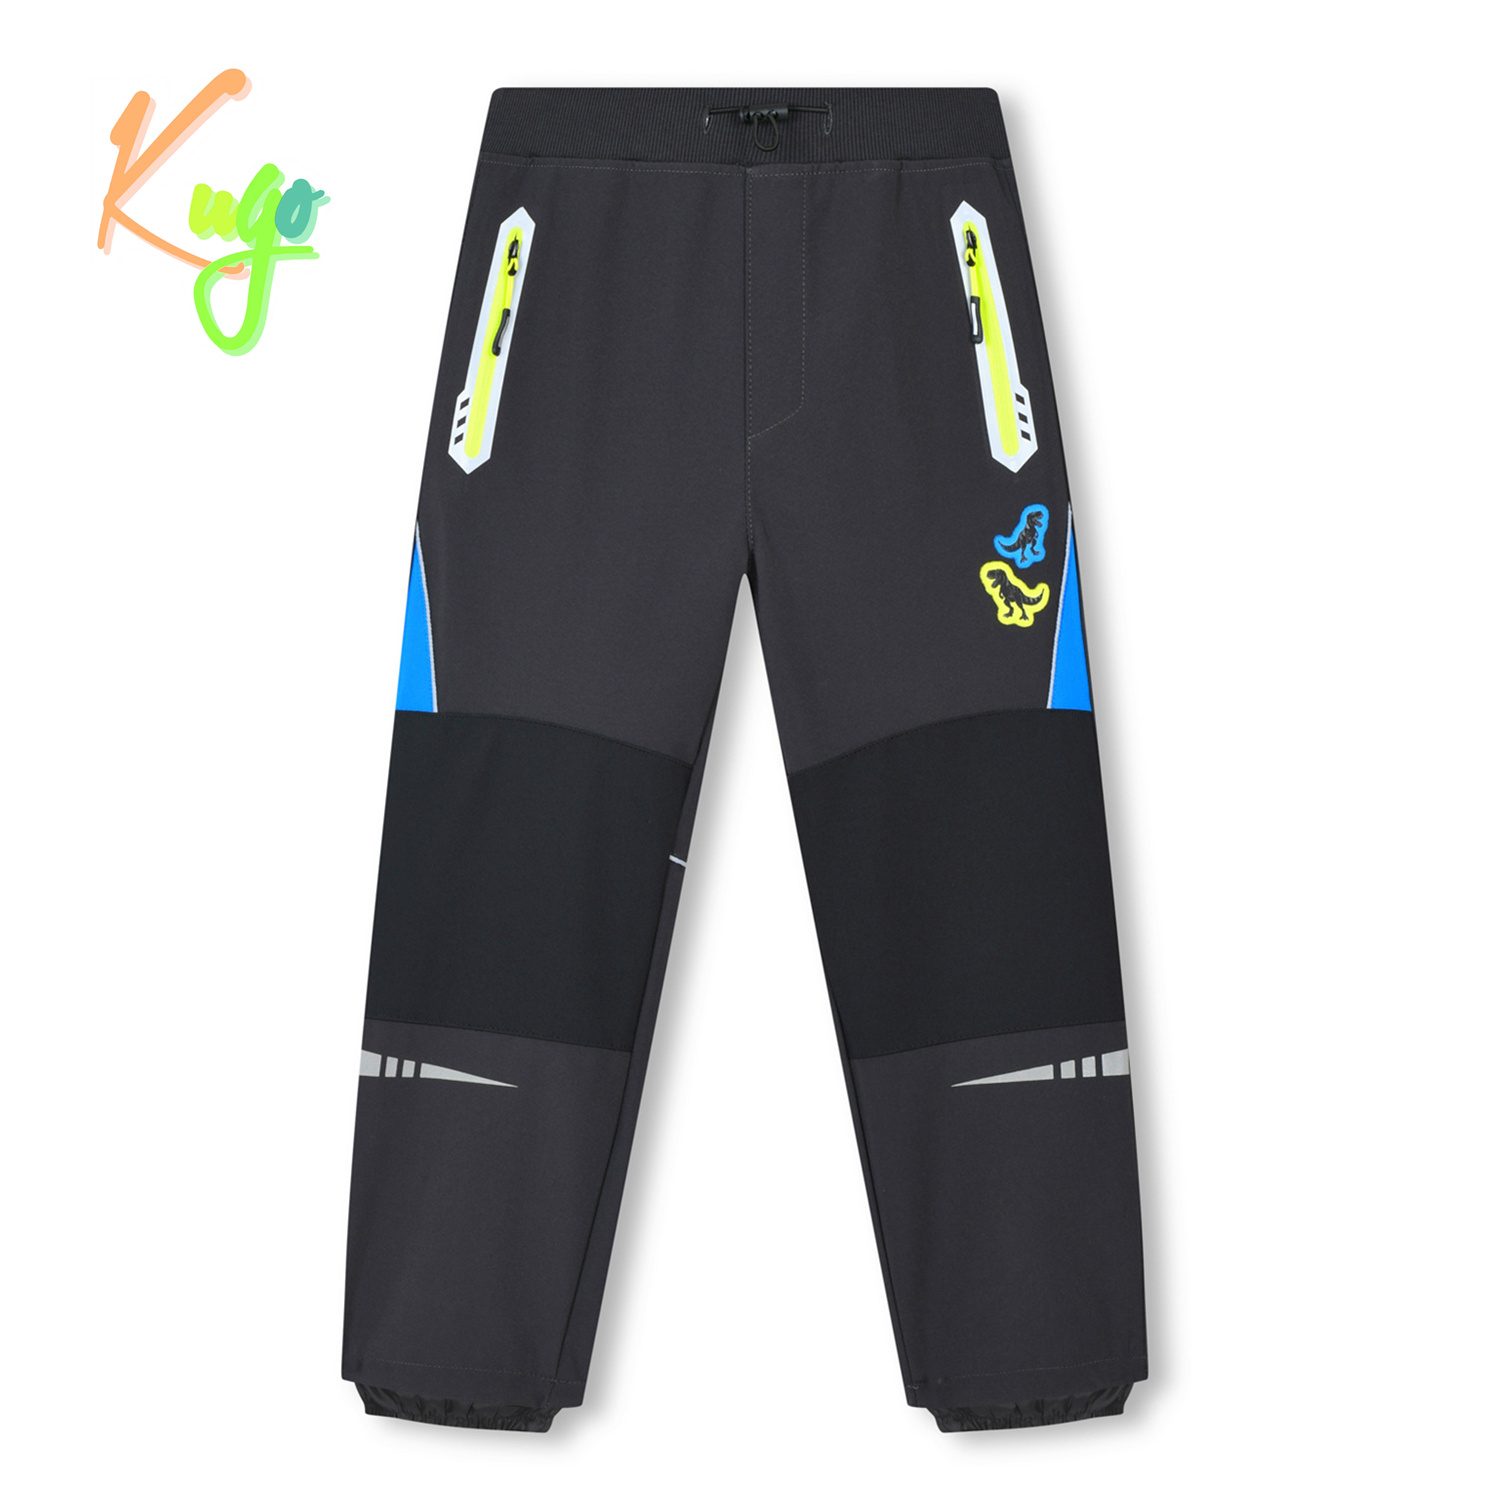 Chlapecké softshellové kalhoty - KUGO HK3116, tmavě šedá / signální zipy Barva: Šedá, Velikost: 104